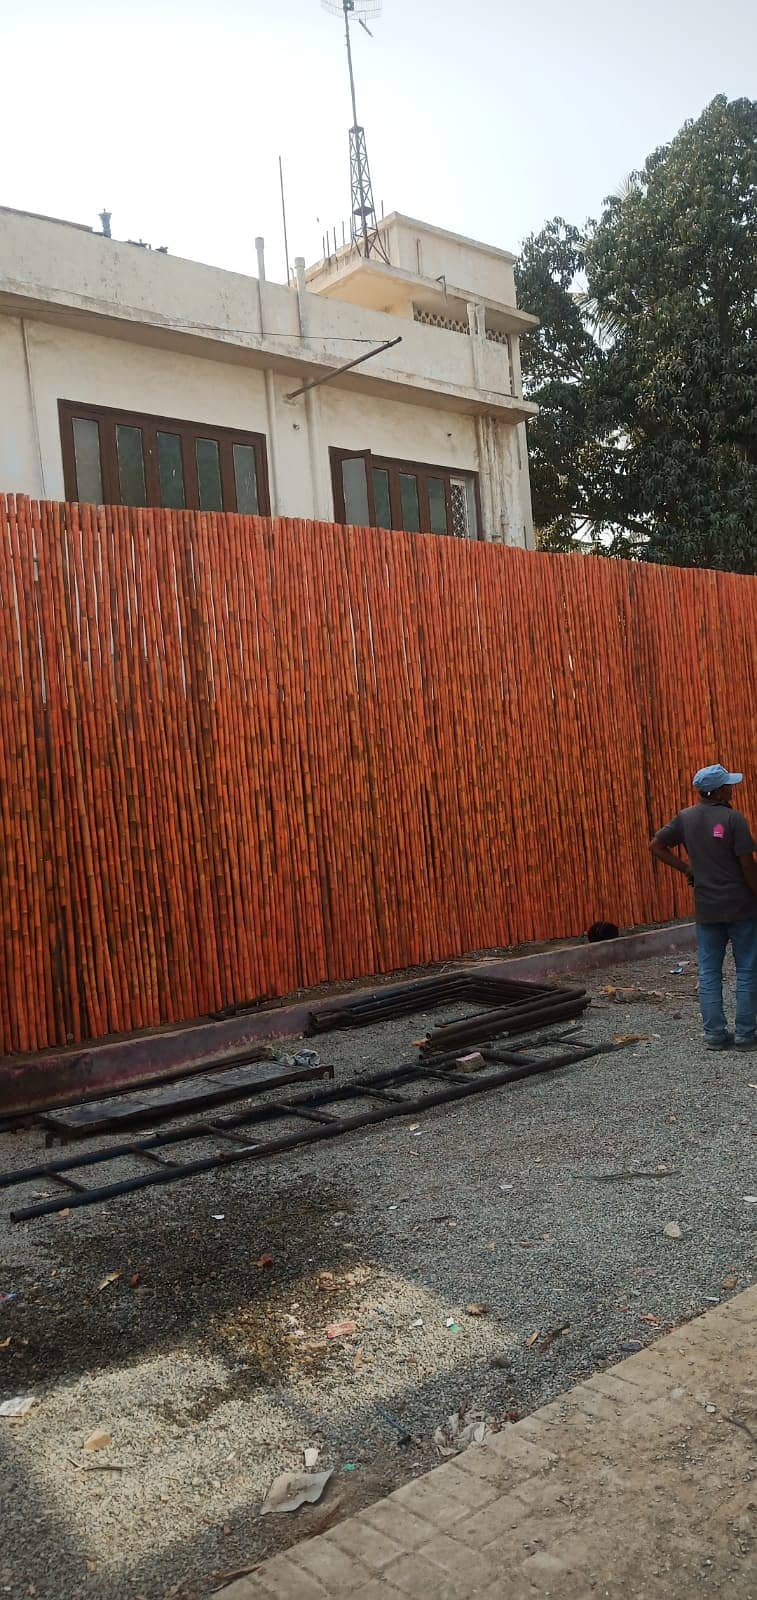 bamboo Shade Jaffri Wall Works Best Baans Work Bamboo Pent House 13